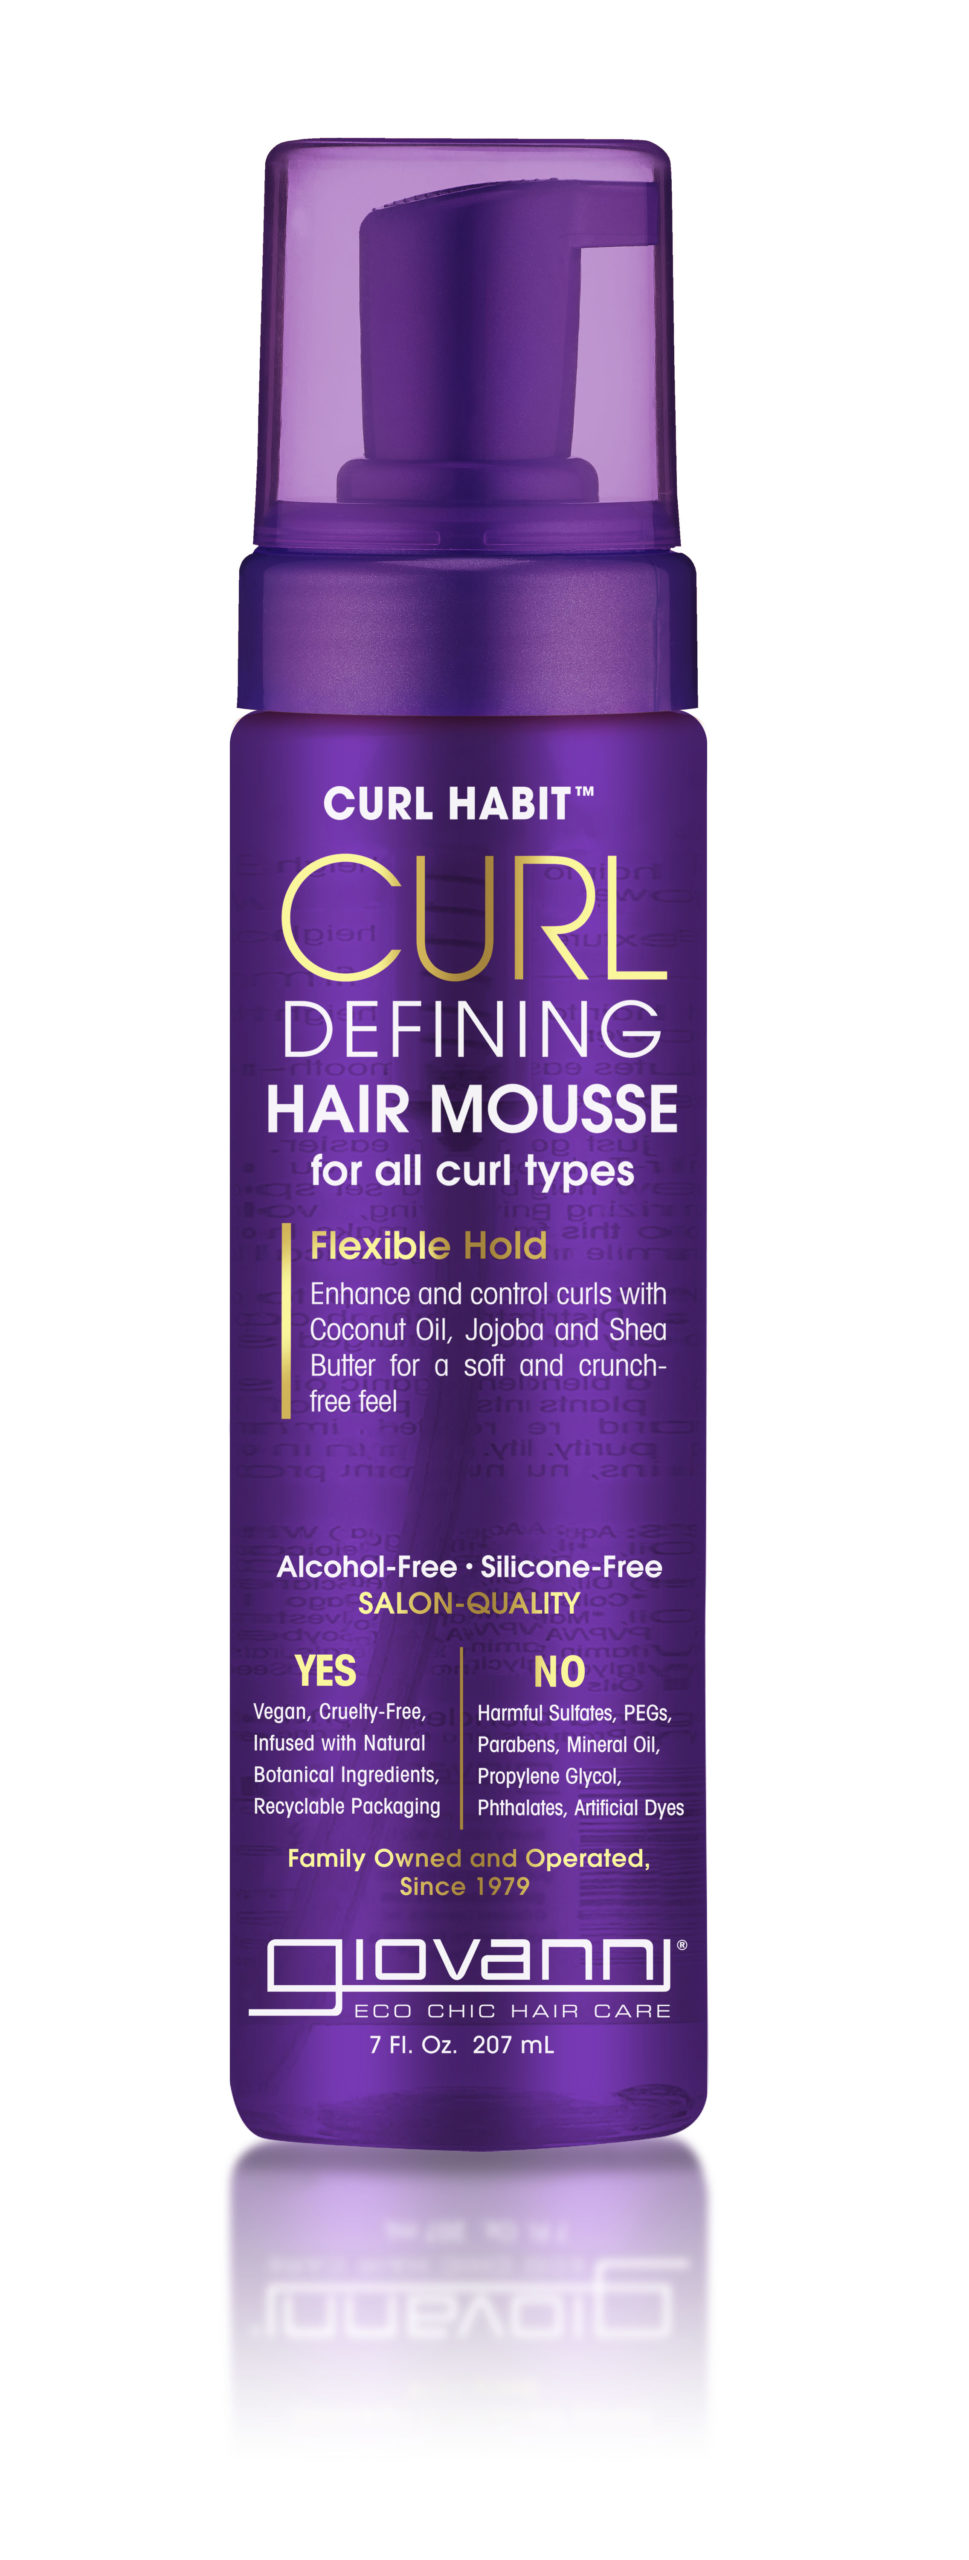 CURL HABIT™ Curl Defining Hair Mousse